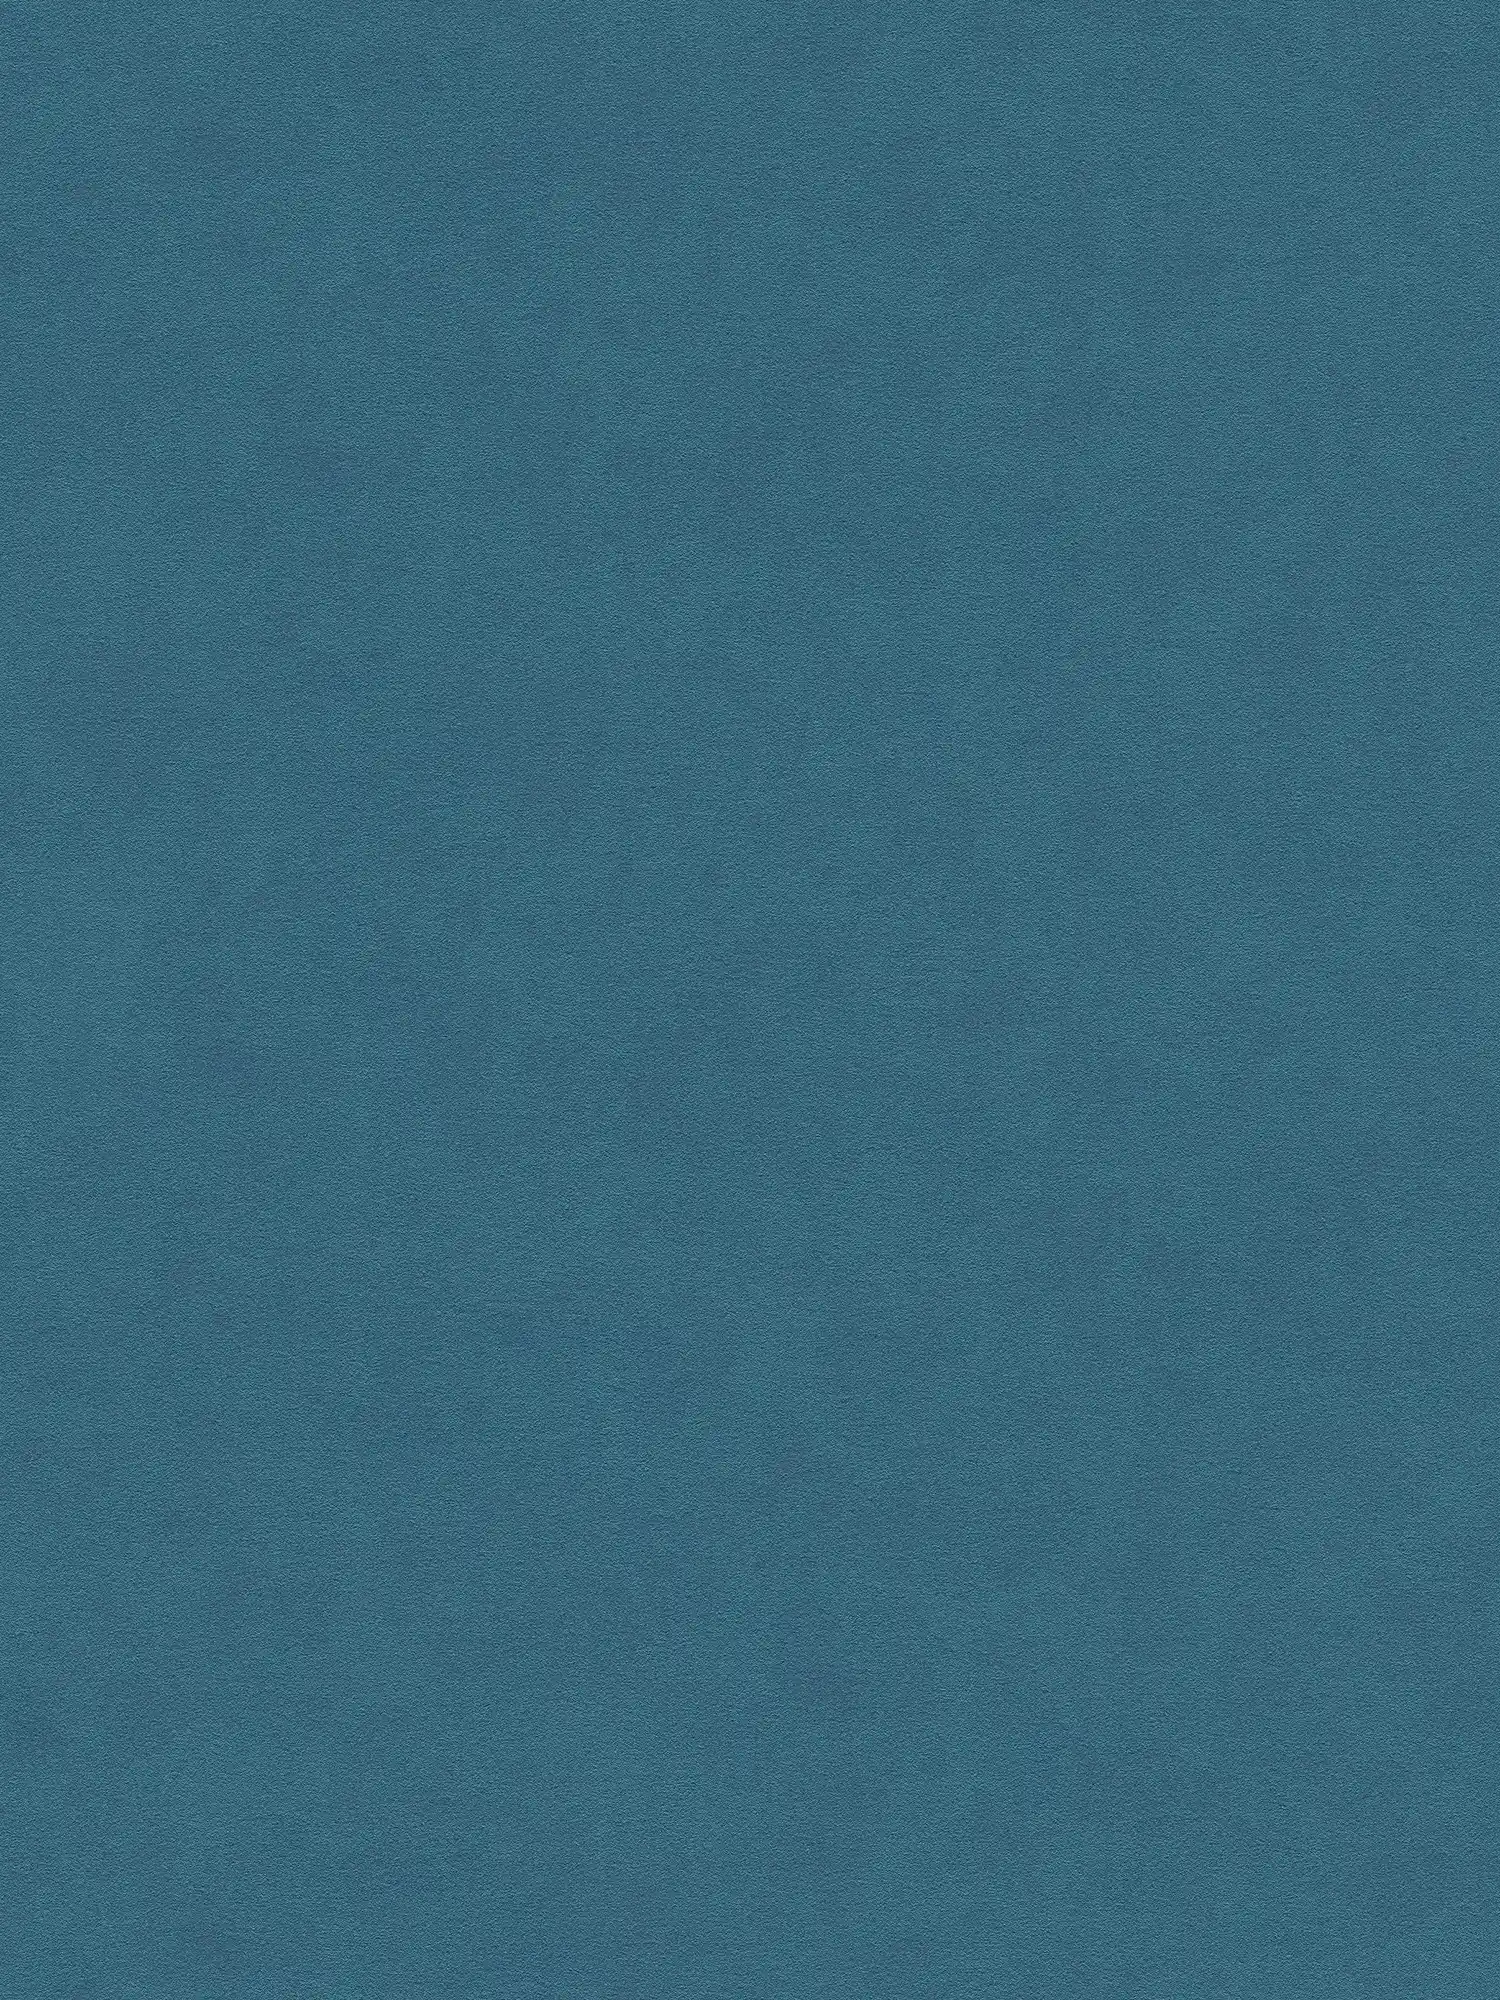 Carta da parati PopStyle colore brillante, struttura in rilievo - blu
